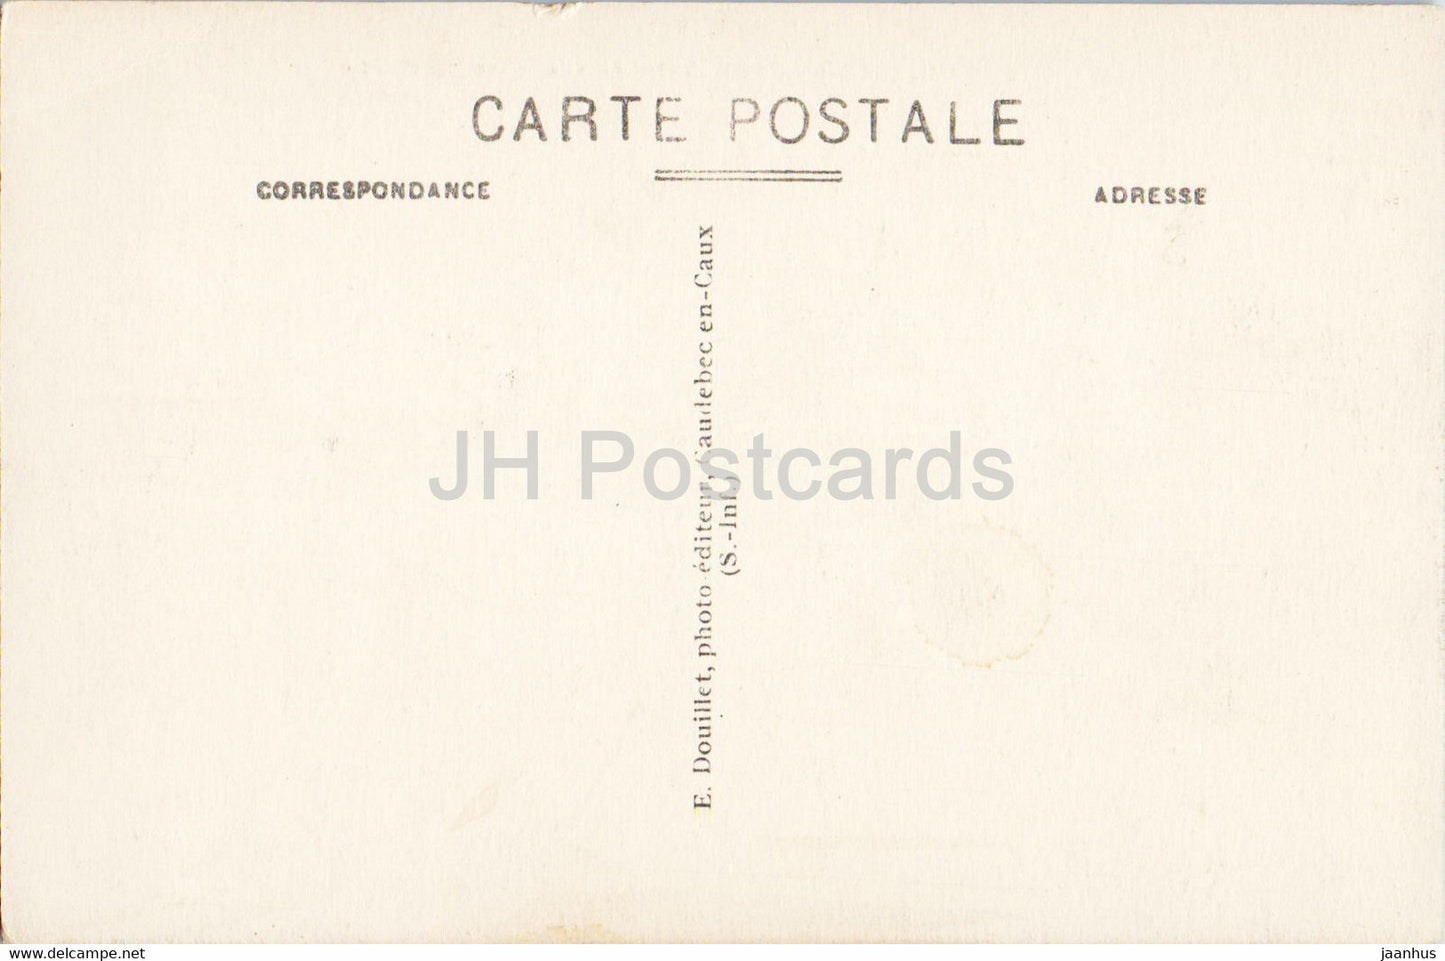 Caudebec en Caux - Vue prise du Calidu - 15 - carte postale ancienne - France - inutilisée